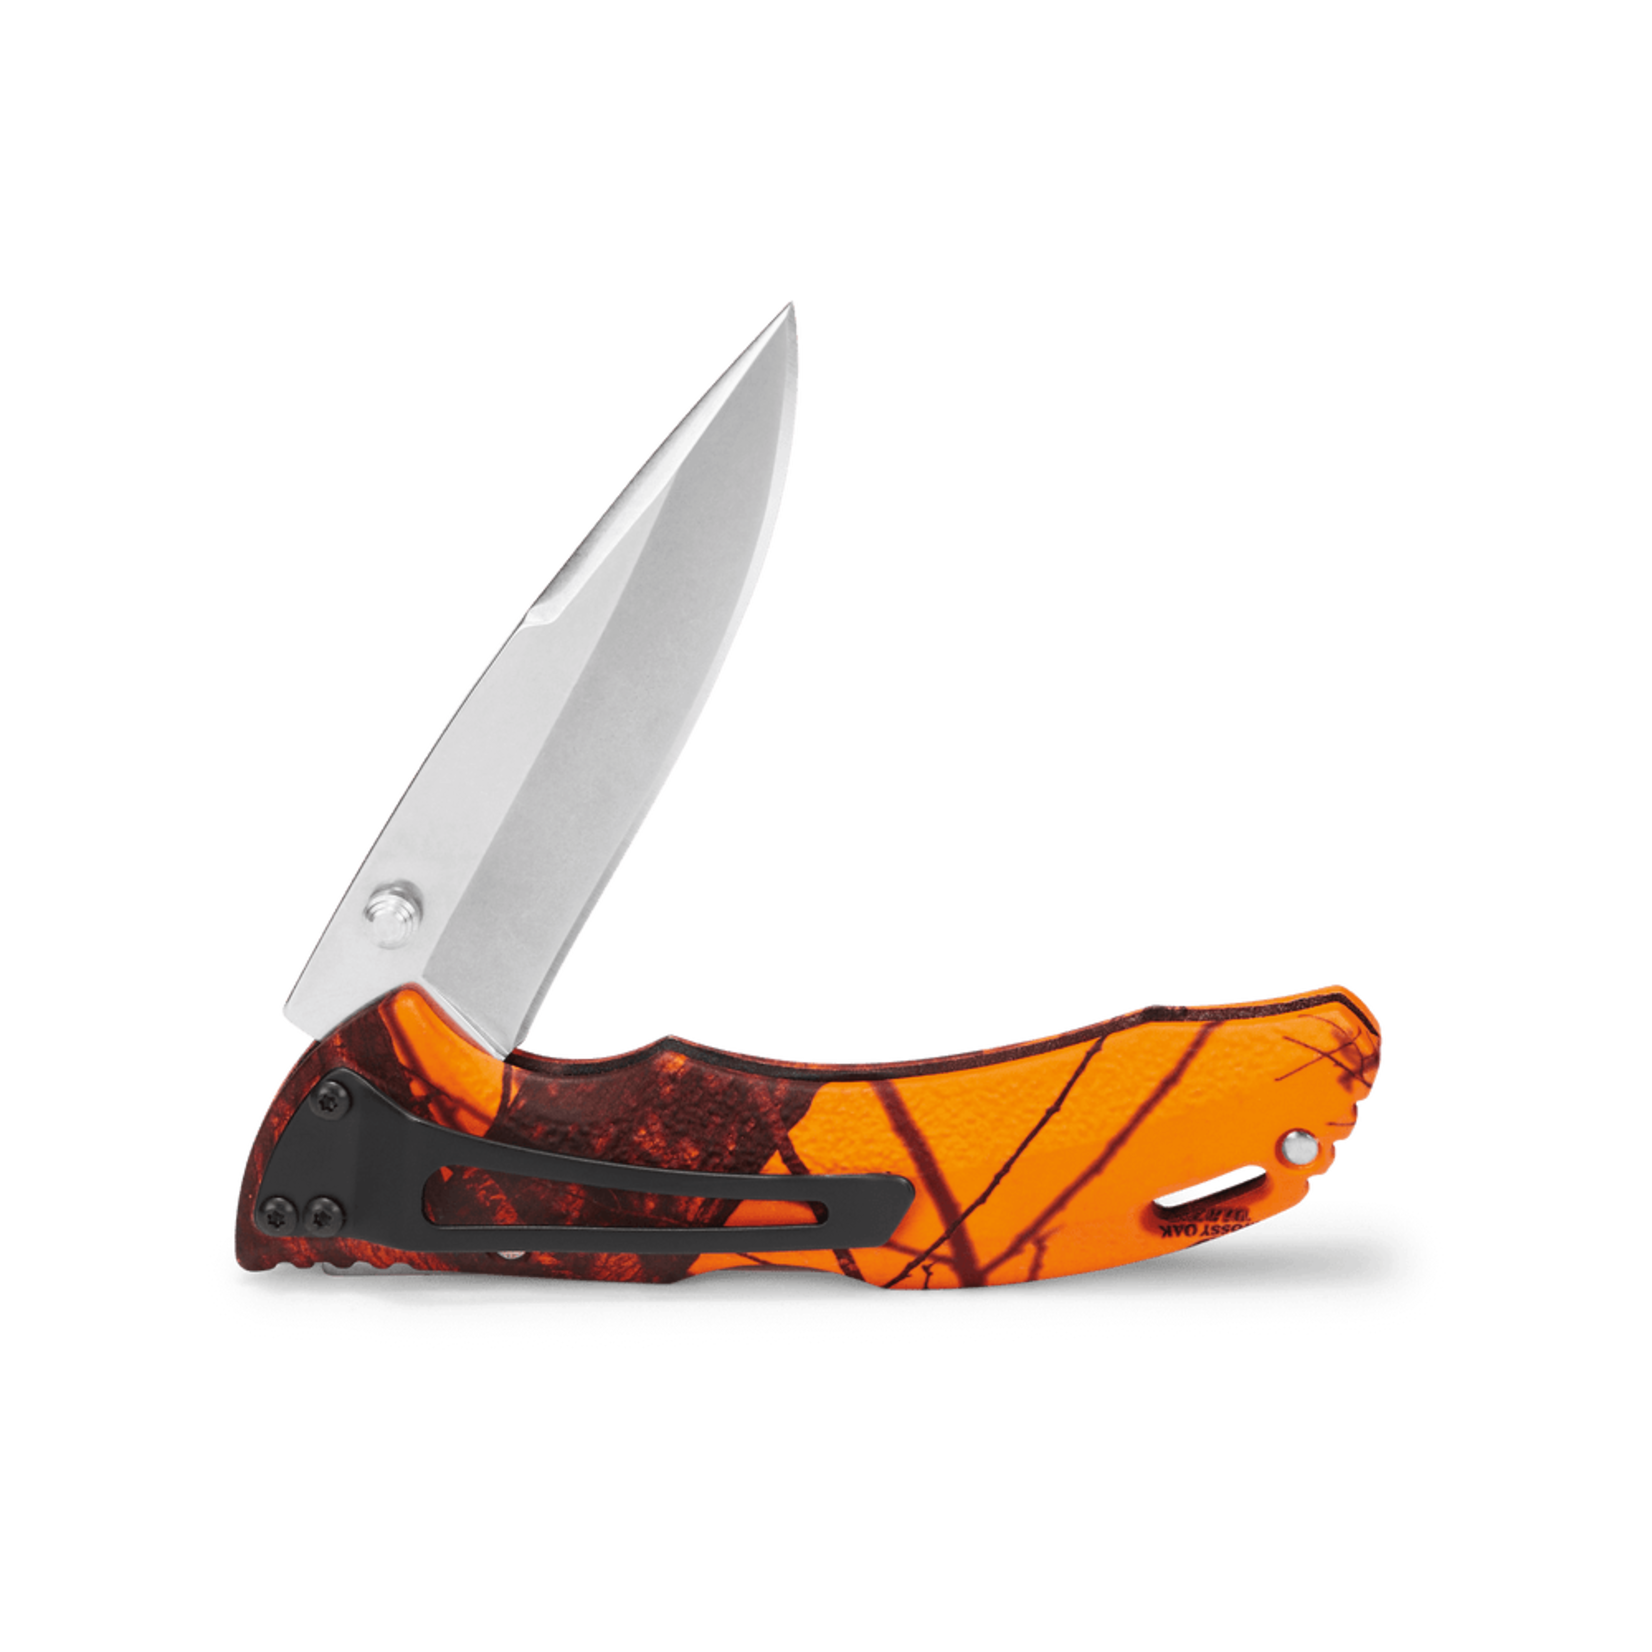 Buck Buck Knives - 285 Bantam Folding Knife Stainless Clip - Forever Warranty